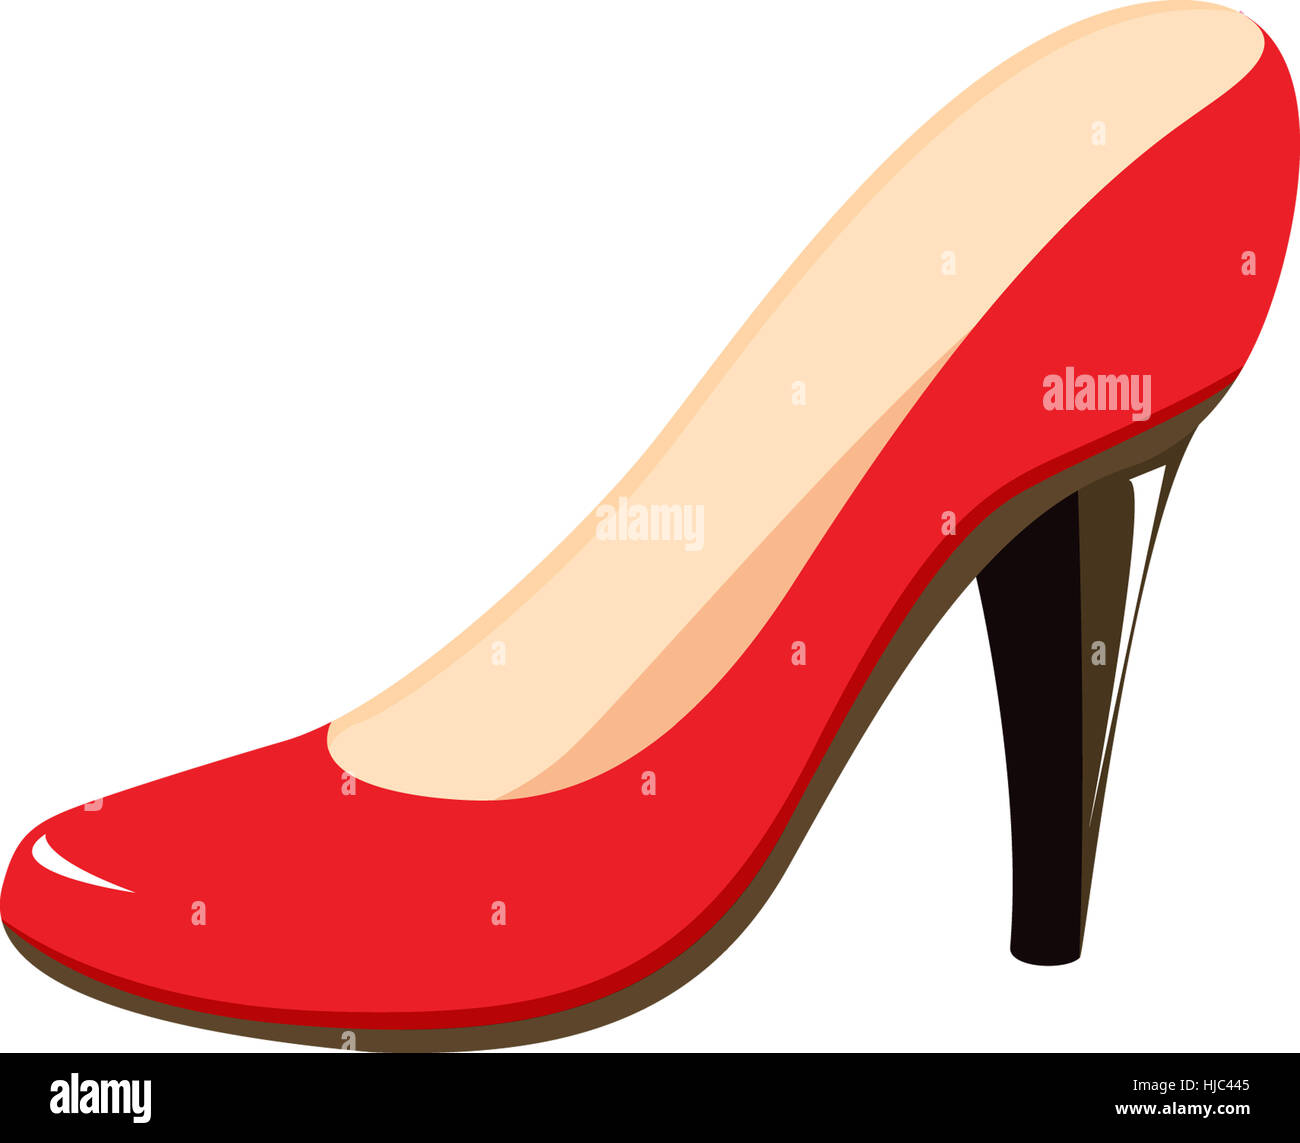 illustration of shoe on white Stock Photo - Alamy